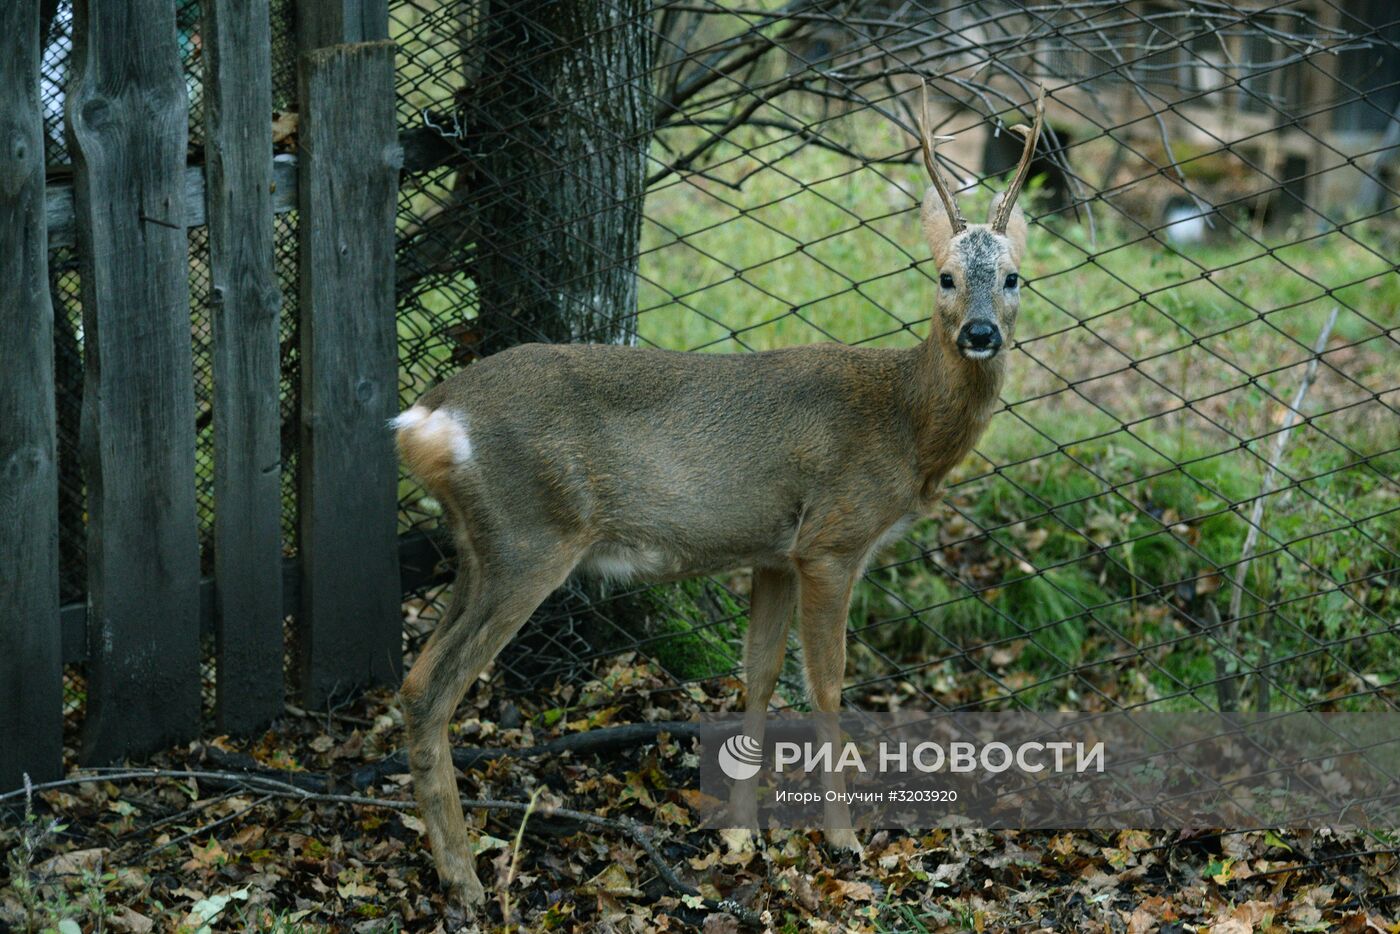 Центр реабилитации диких животных "Утес" в Хабаровском крае